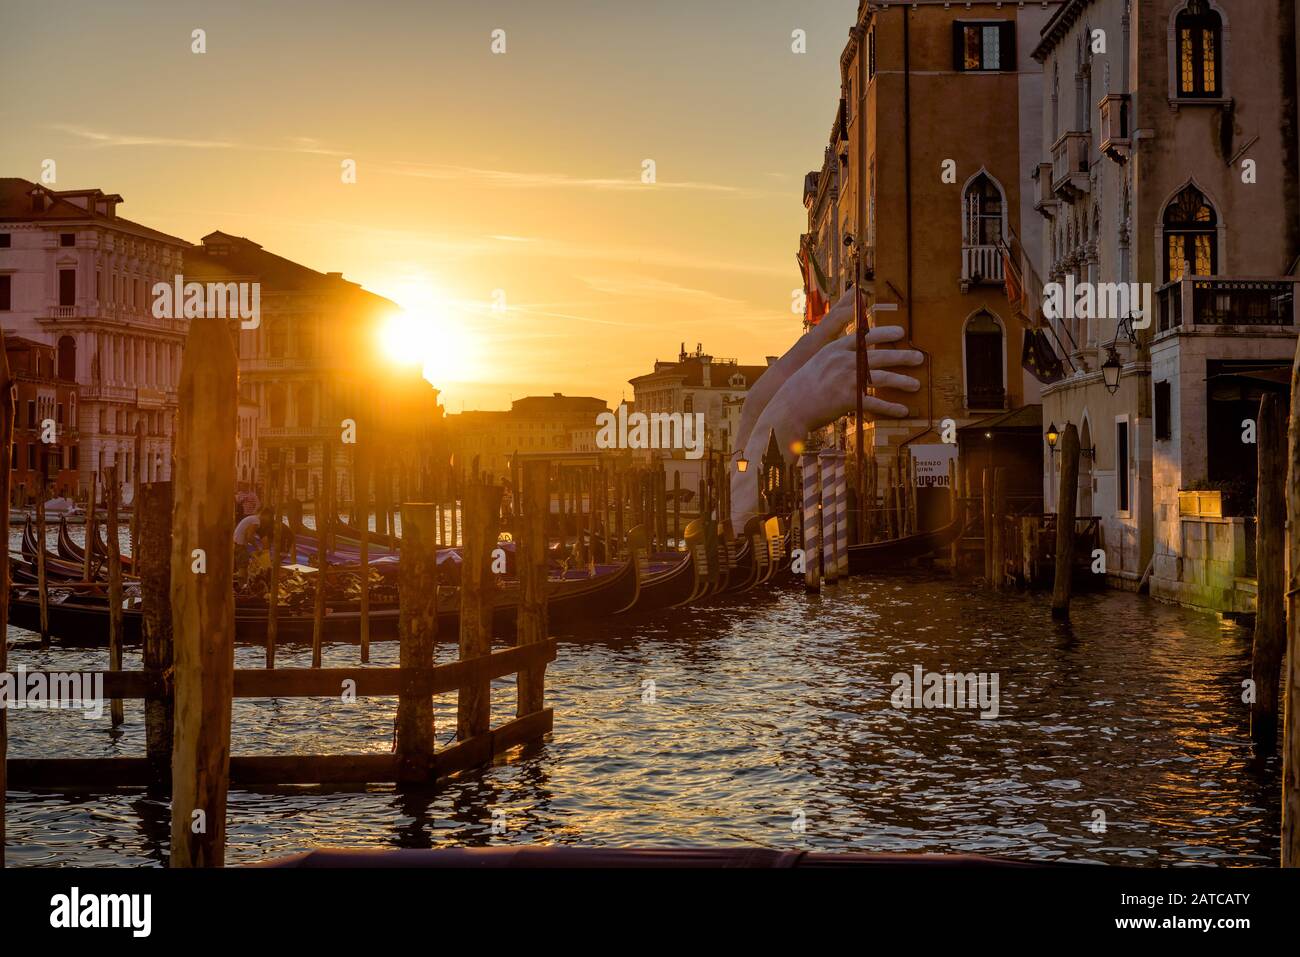 Venedig, Italien - 18. Mai 2017: Canal Grande mit Pier für Gondeln bei Sonnenuntergang. Riesige Hände, die das Gebäude stützen, sind eine Skulptur des Künstlers Lorenz Stockfoto